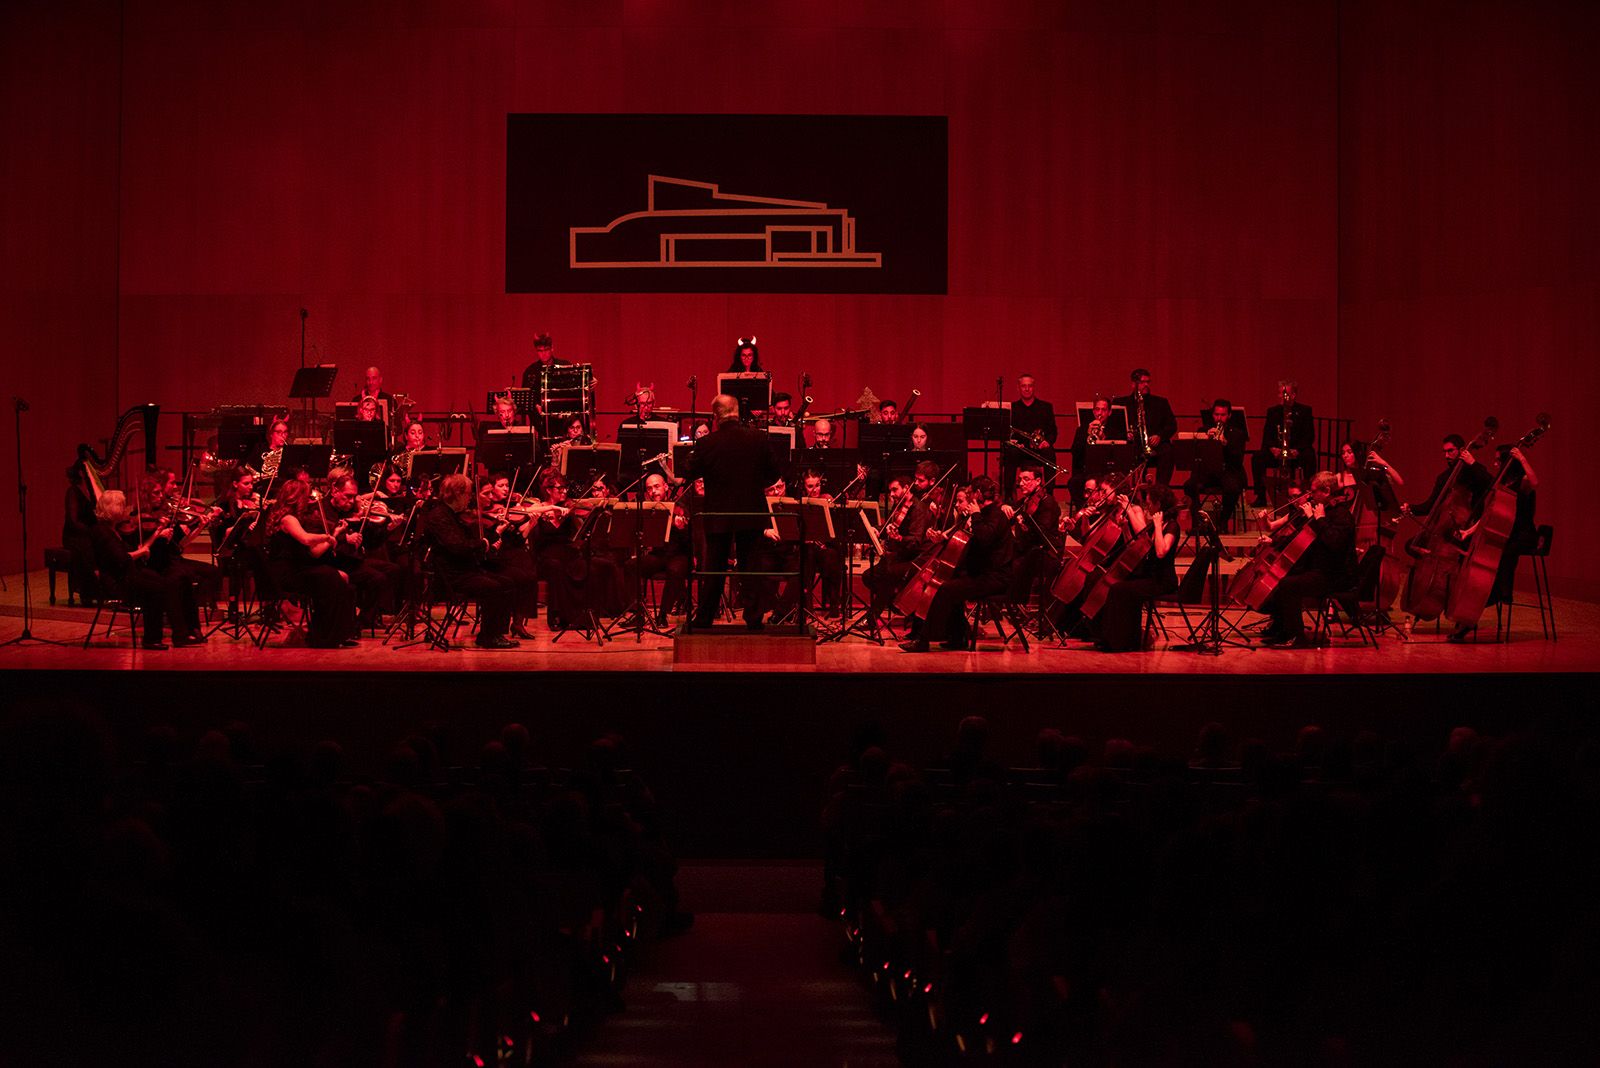 Concert de Valsos i Danses de l'Orquestra Simfònica Sant Cugat. FOTO: Bernat Millet.